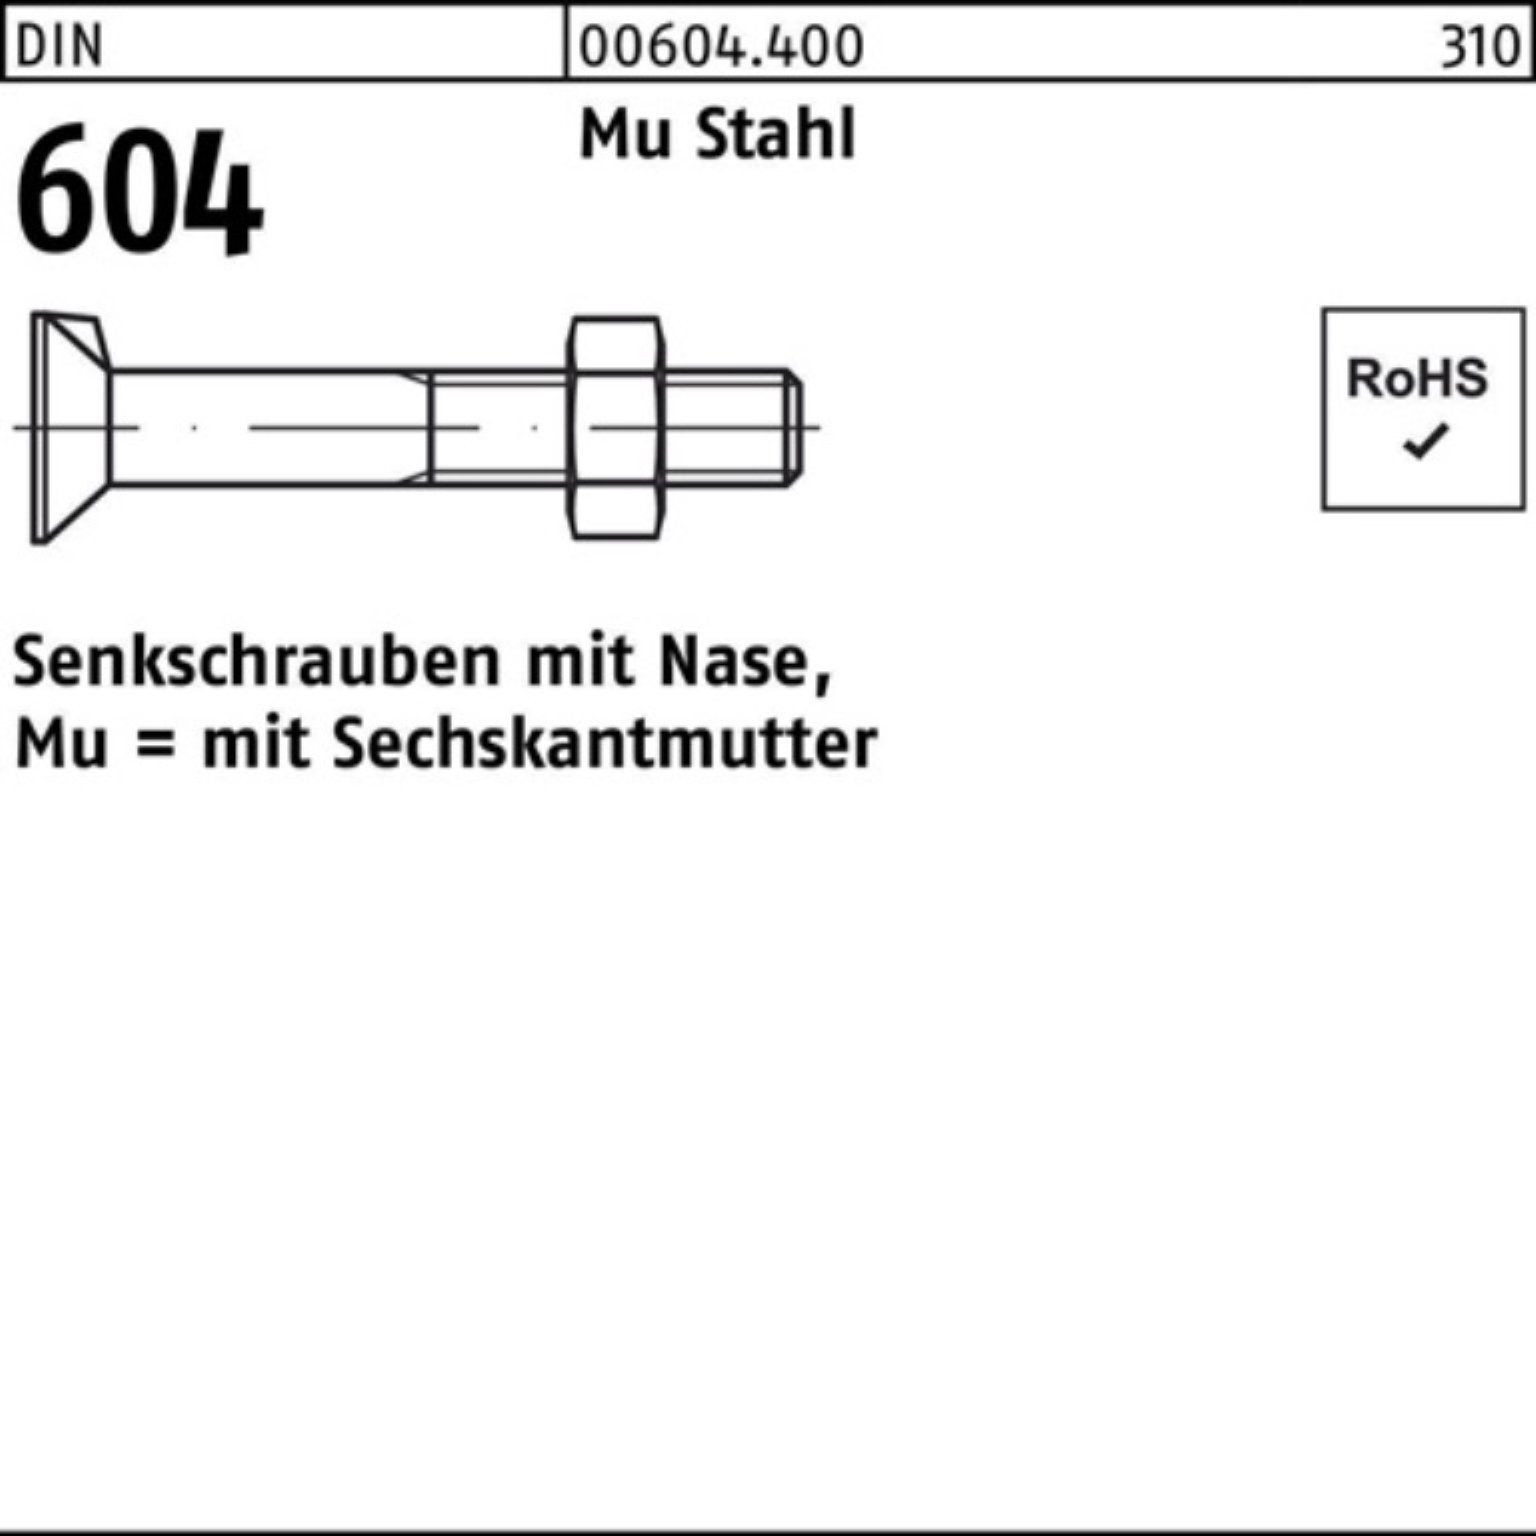 Senkschraube 4.6 5 DIN Pack Senkschraube 100er 604 Nase/6-ktmutter Reyher Mu M16x Stahl 40